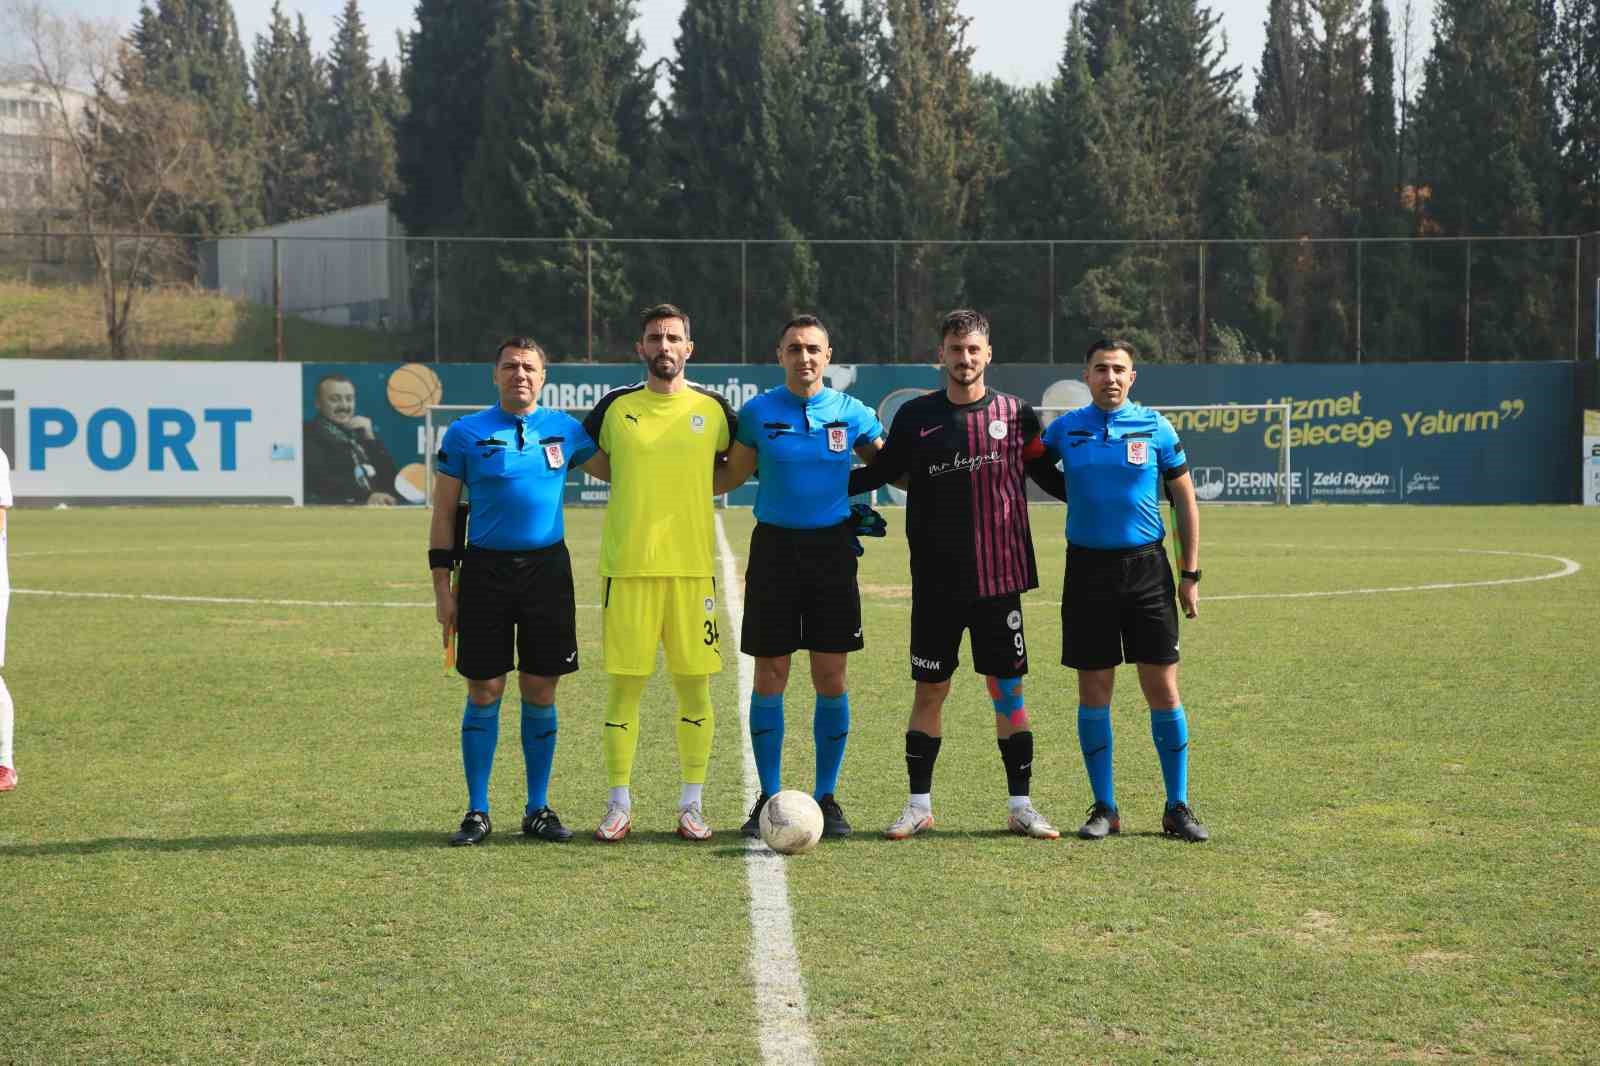 TFF 2. Lig: Belediye Derincespor: 3 - Isparta 32 Spor: 0